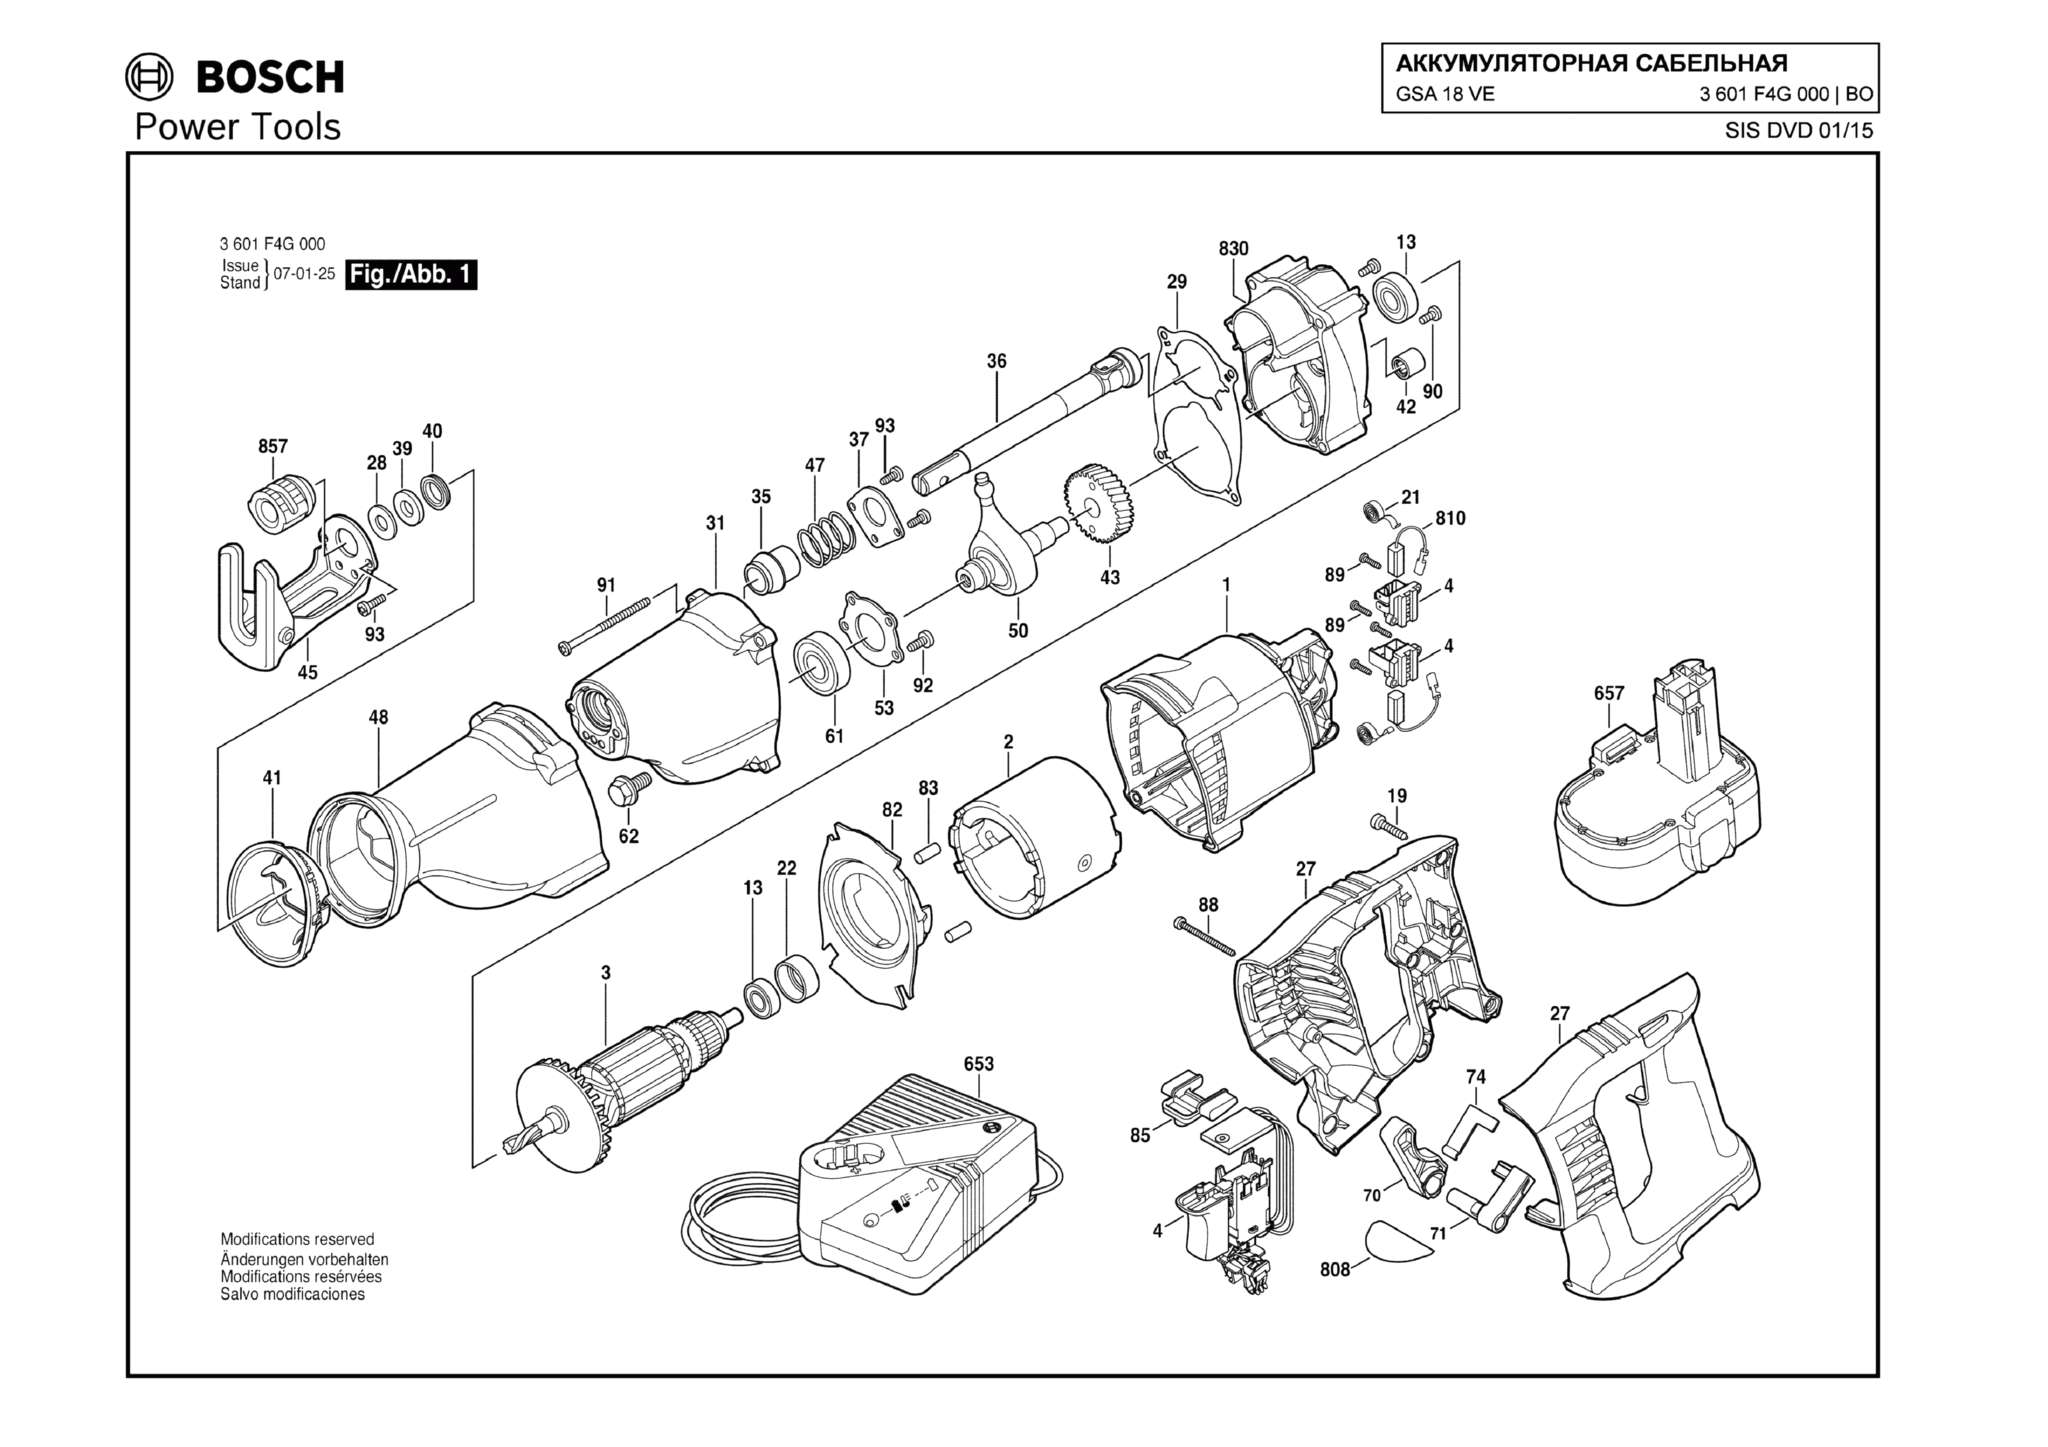 Запчасти, схема и деталировка Bosch GSA 18 VE (ТИП 3601F4G000)